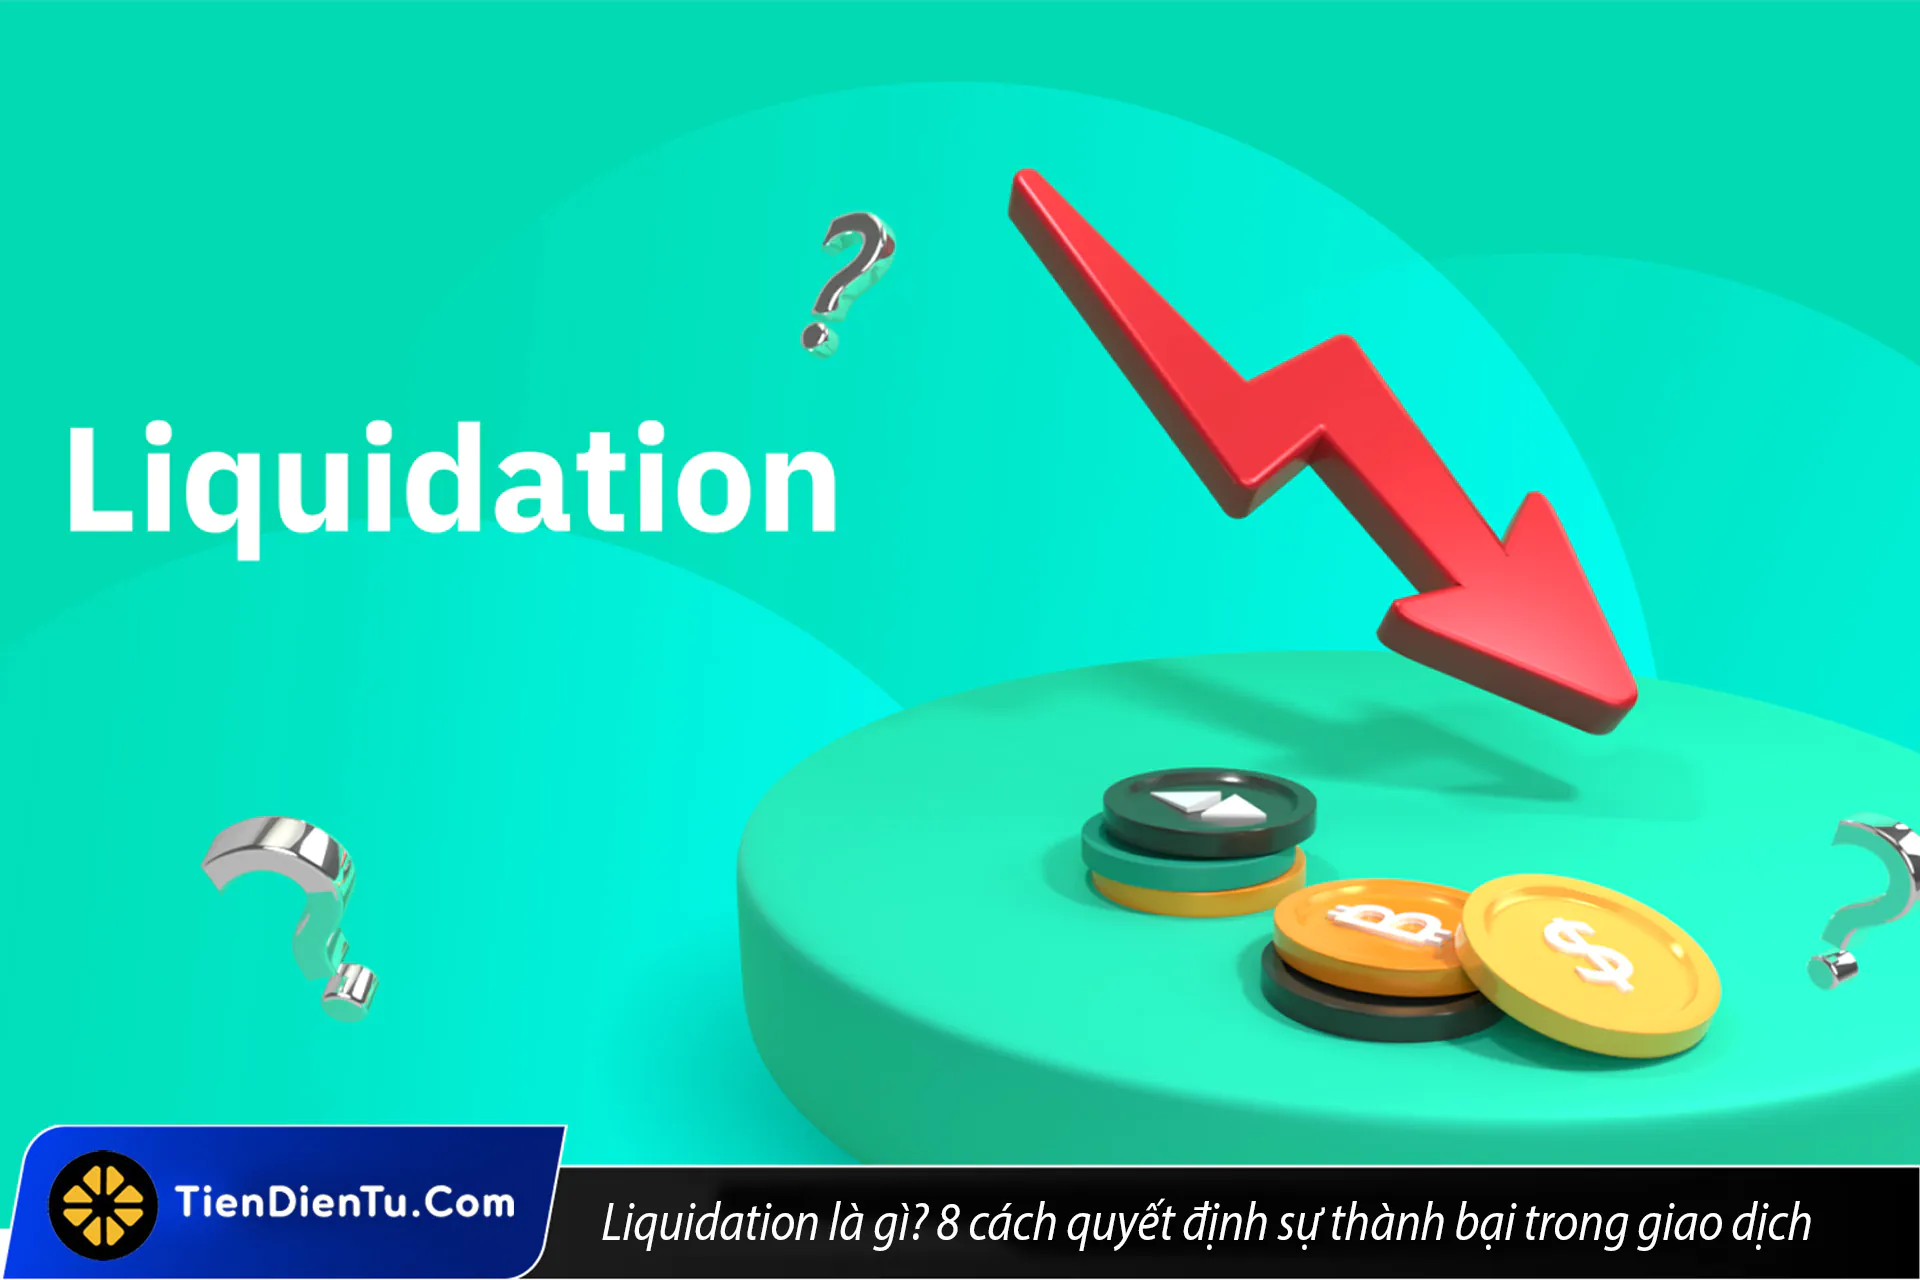 Liquidation (thanh lý) là gì trong crypto? 8 cách giúp bạn tránh bị thanh lý khi giao dịch